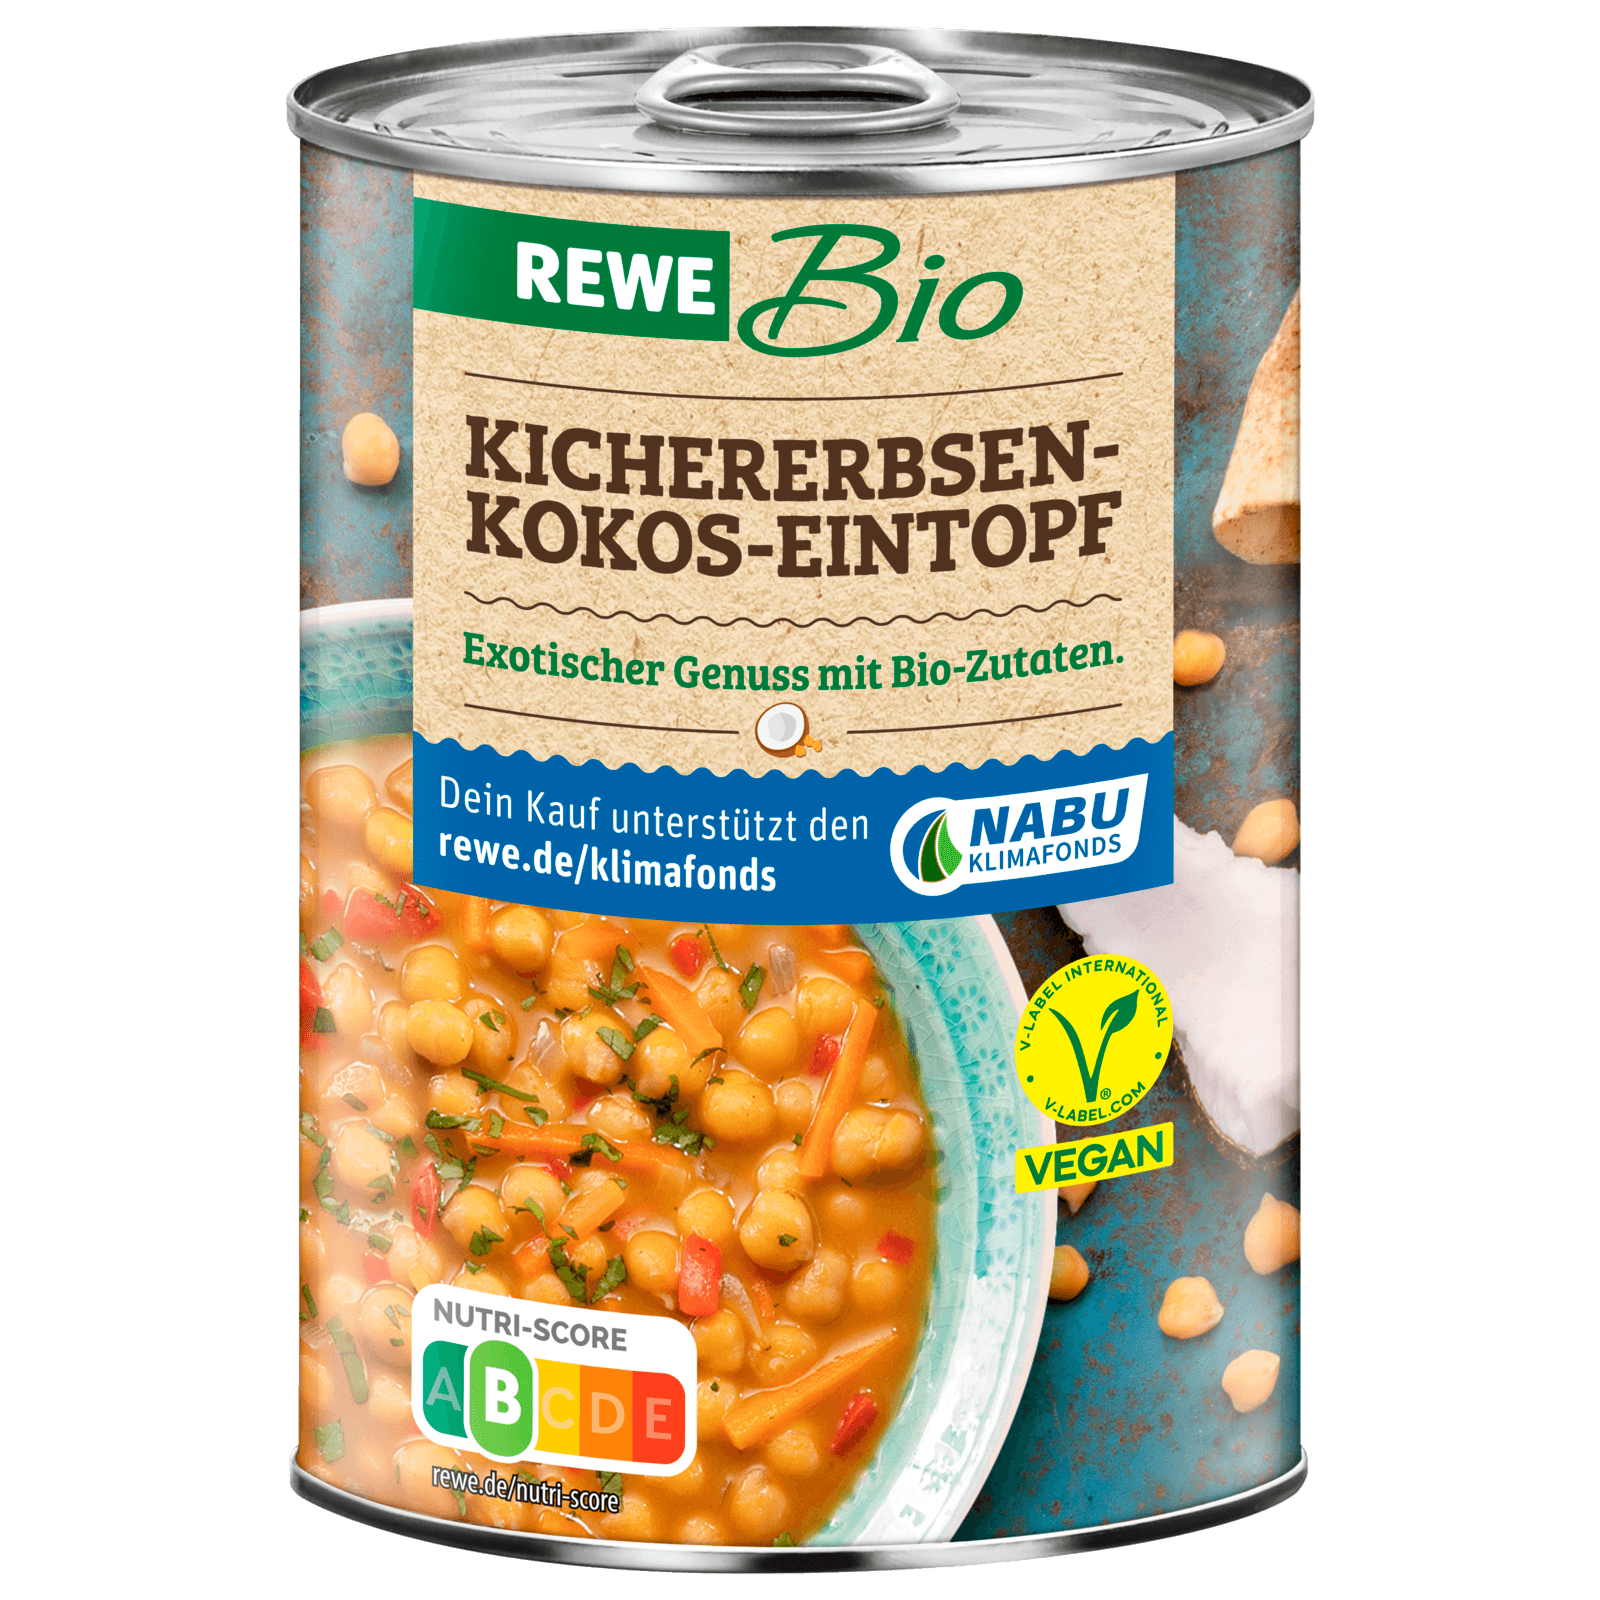 REWE Bio Kichererbsen-Kokos-Eintopf 400ml